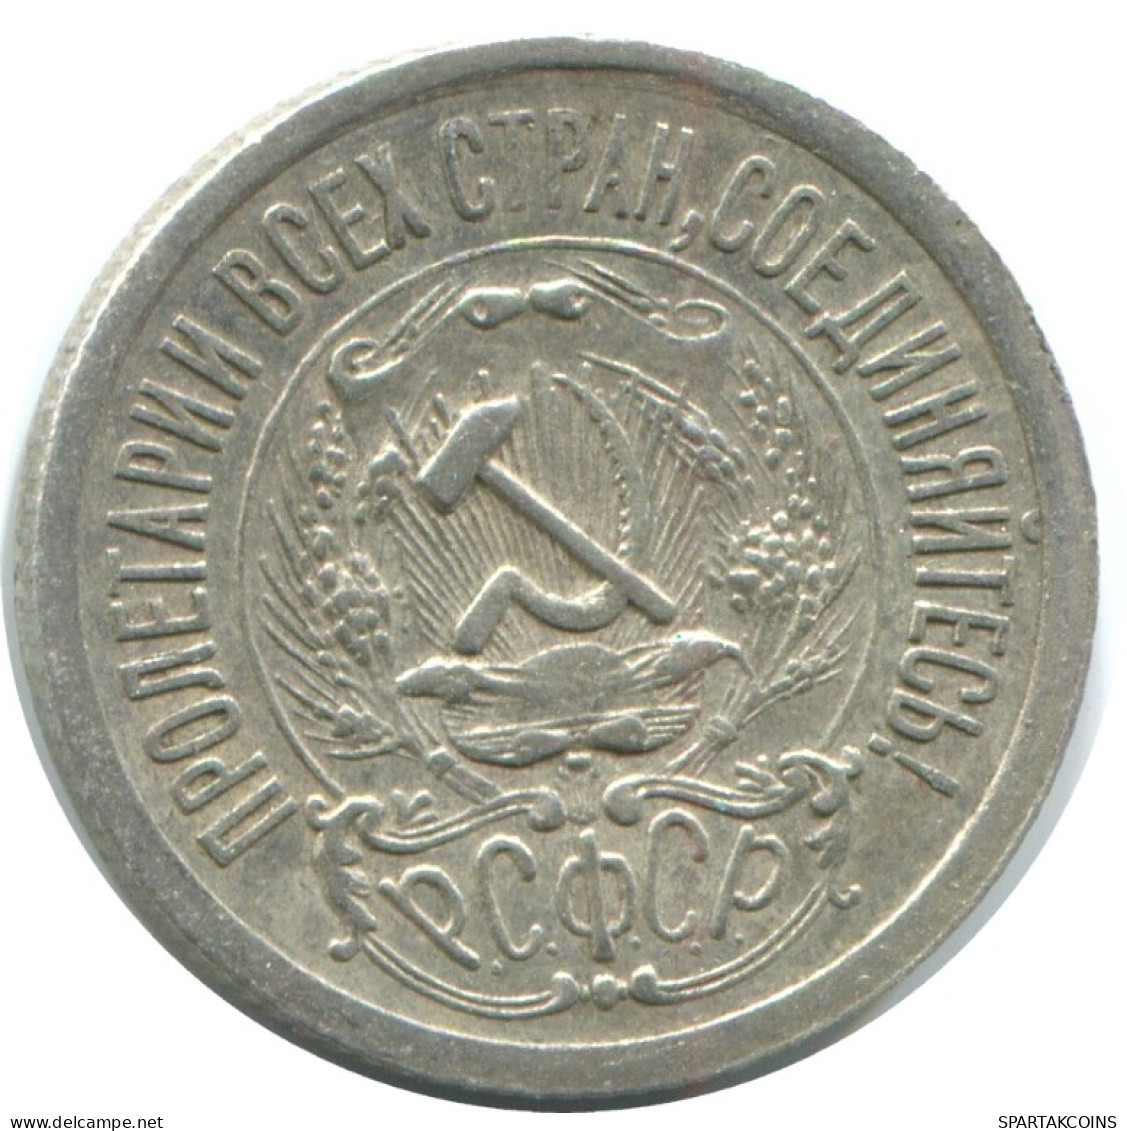 15 KOPEKS 1923 RUSSIA RSFSR SILVER Coin HIGH GRADE #AF158.4.U.A - Russland